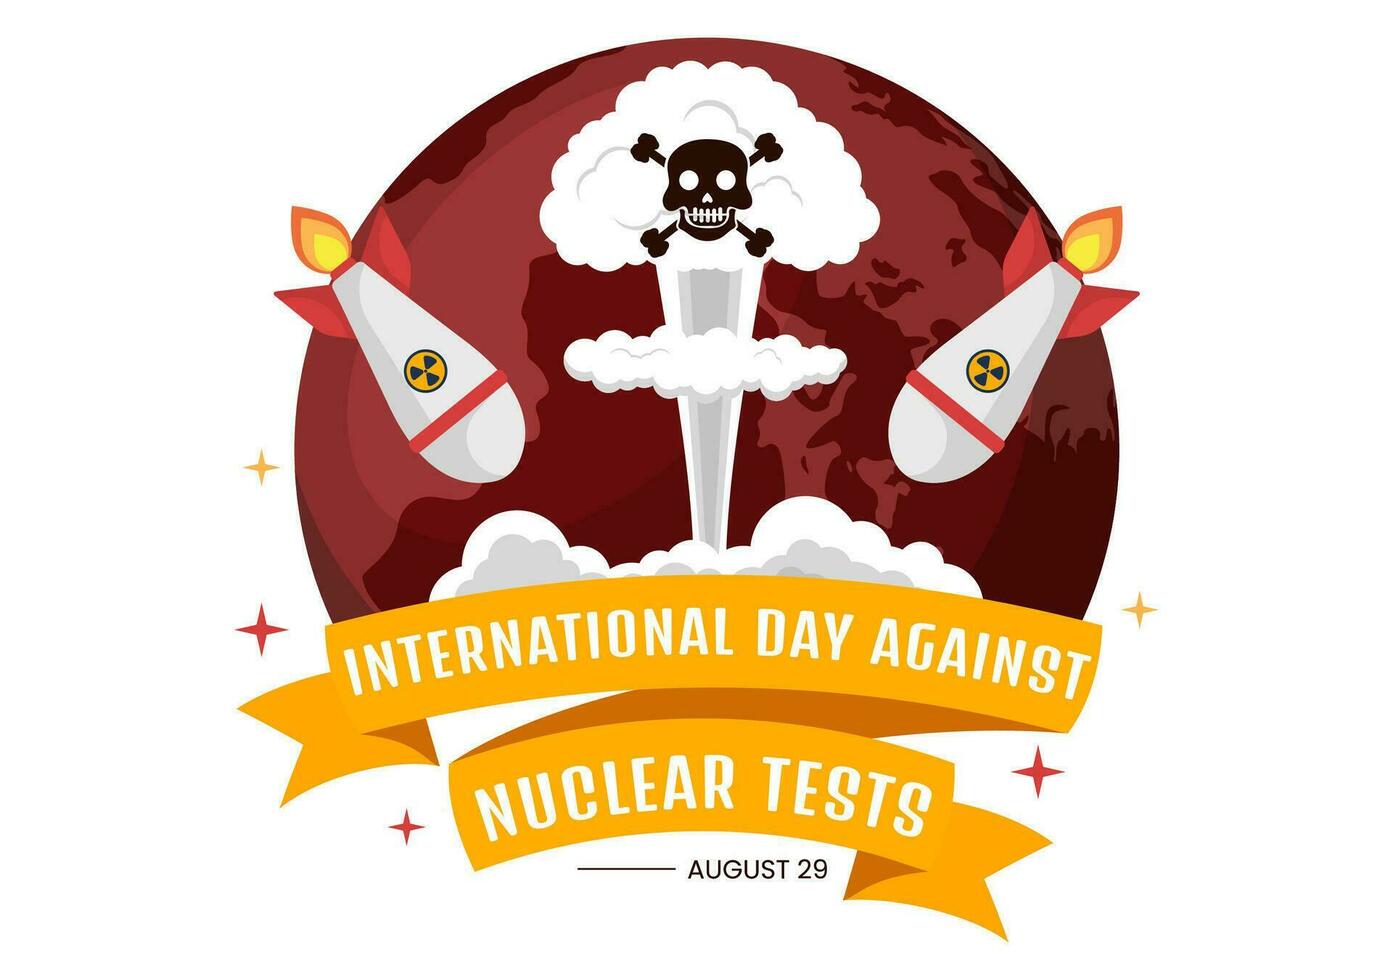 International Tag gegen nuklear Tests Vektor Illustration auf August 29 mit Verbot Zeichen Symbol, Erde und Rakete Bombe im Hand gezeichnet Vorlagen